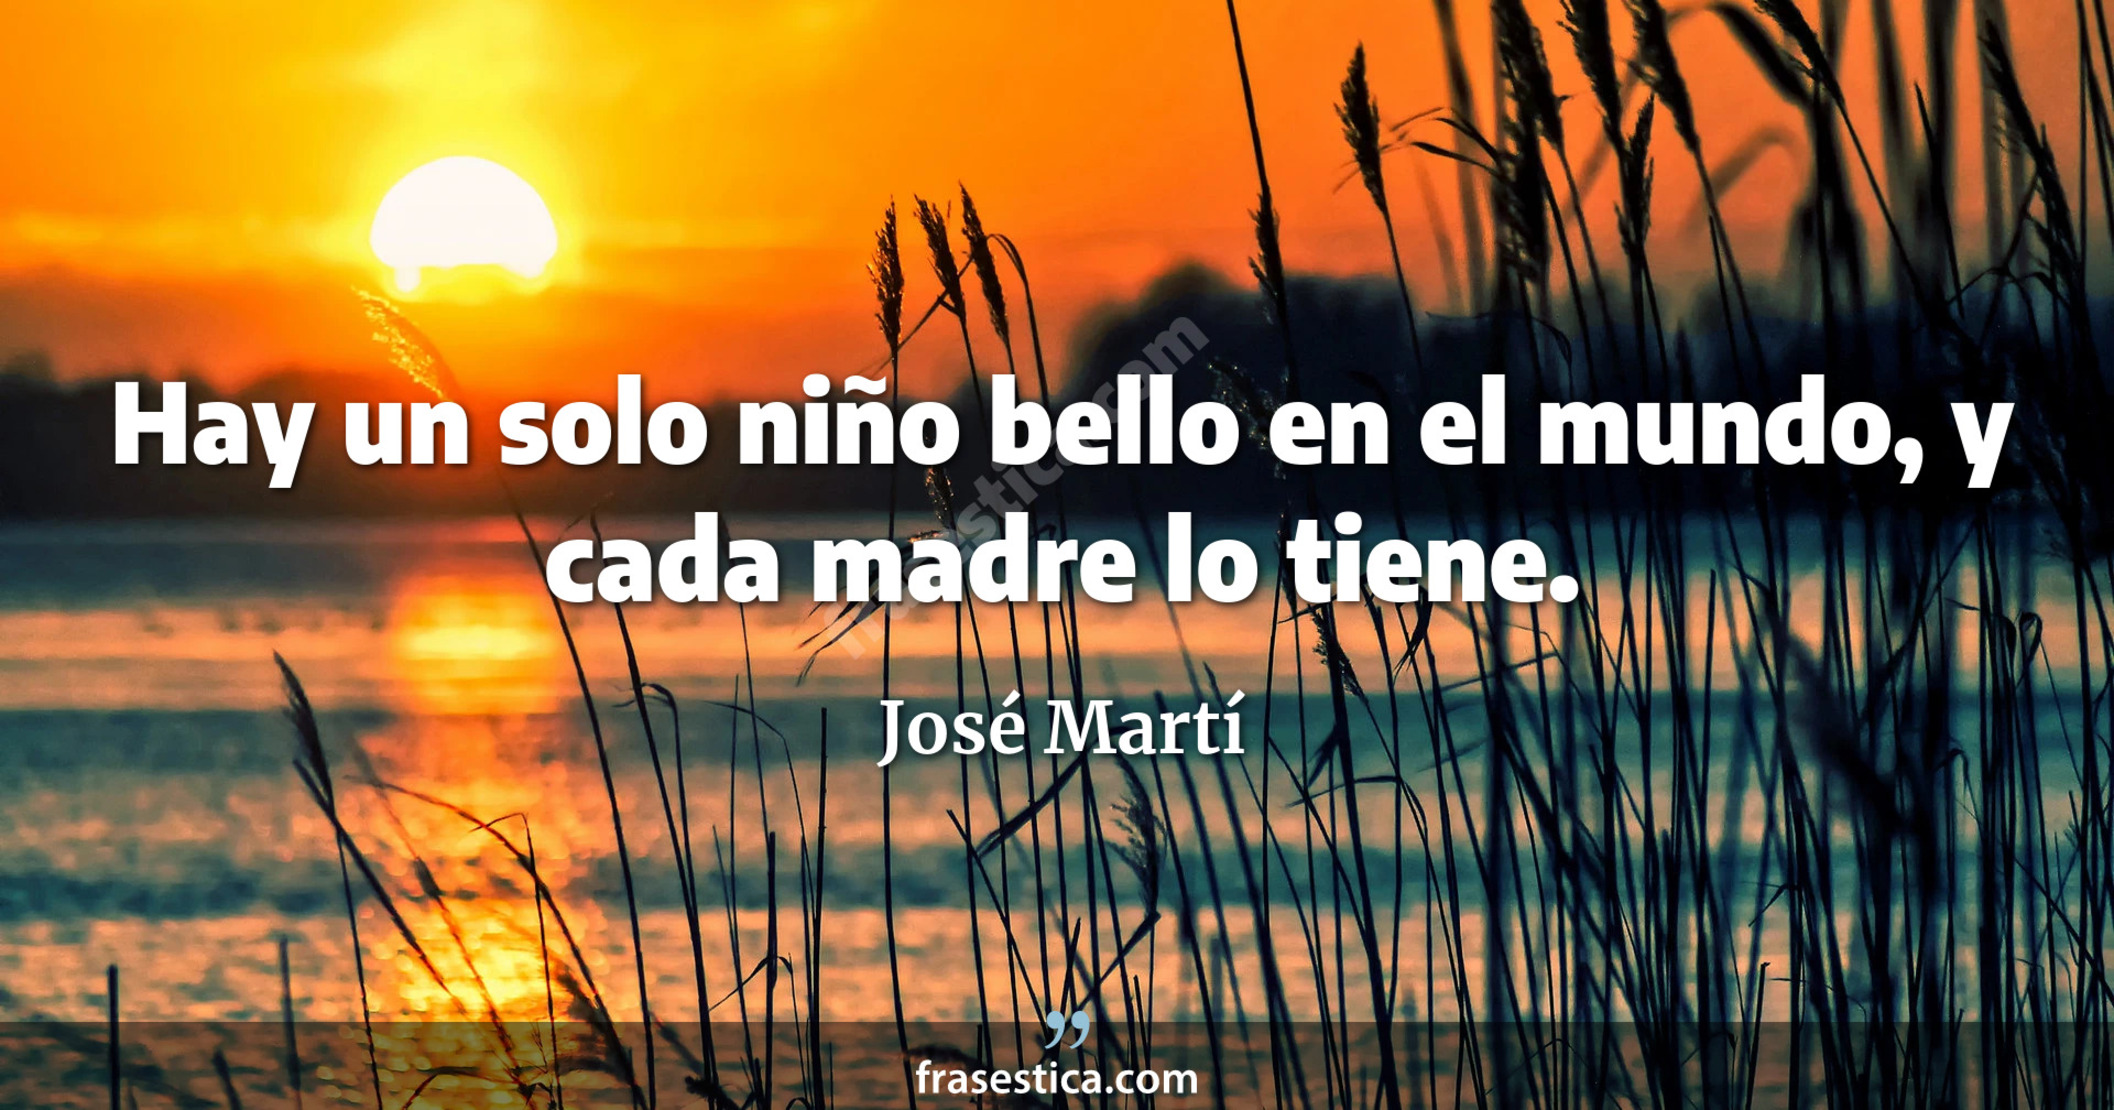 Hay un solo niño bello en el mundo, y cada madre lo tiene. - José Martí